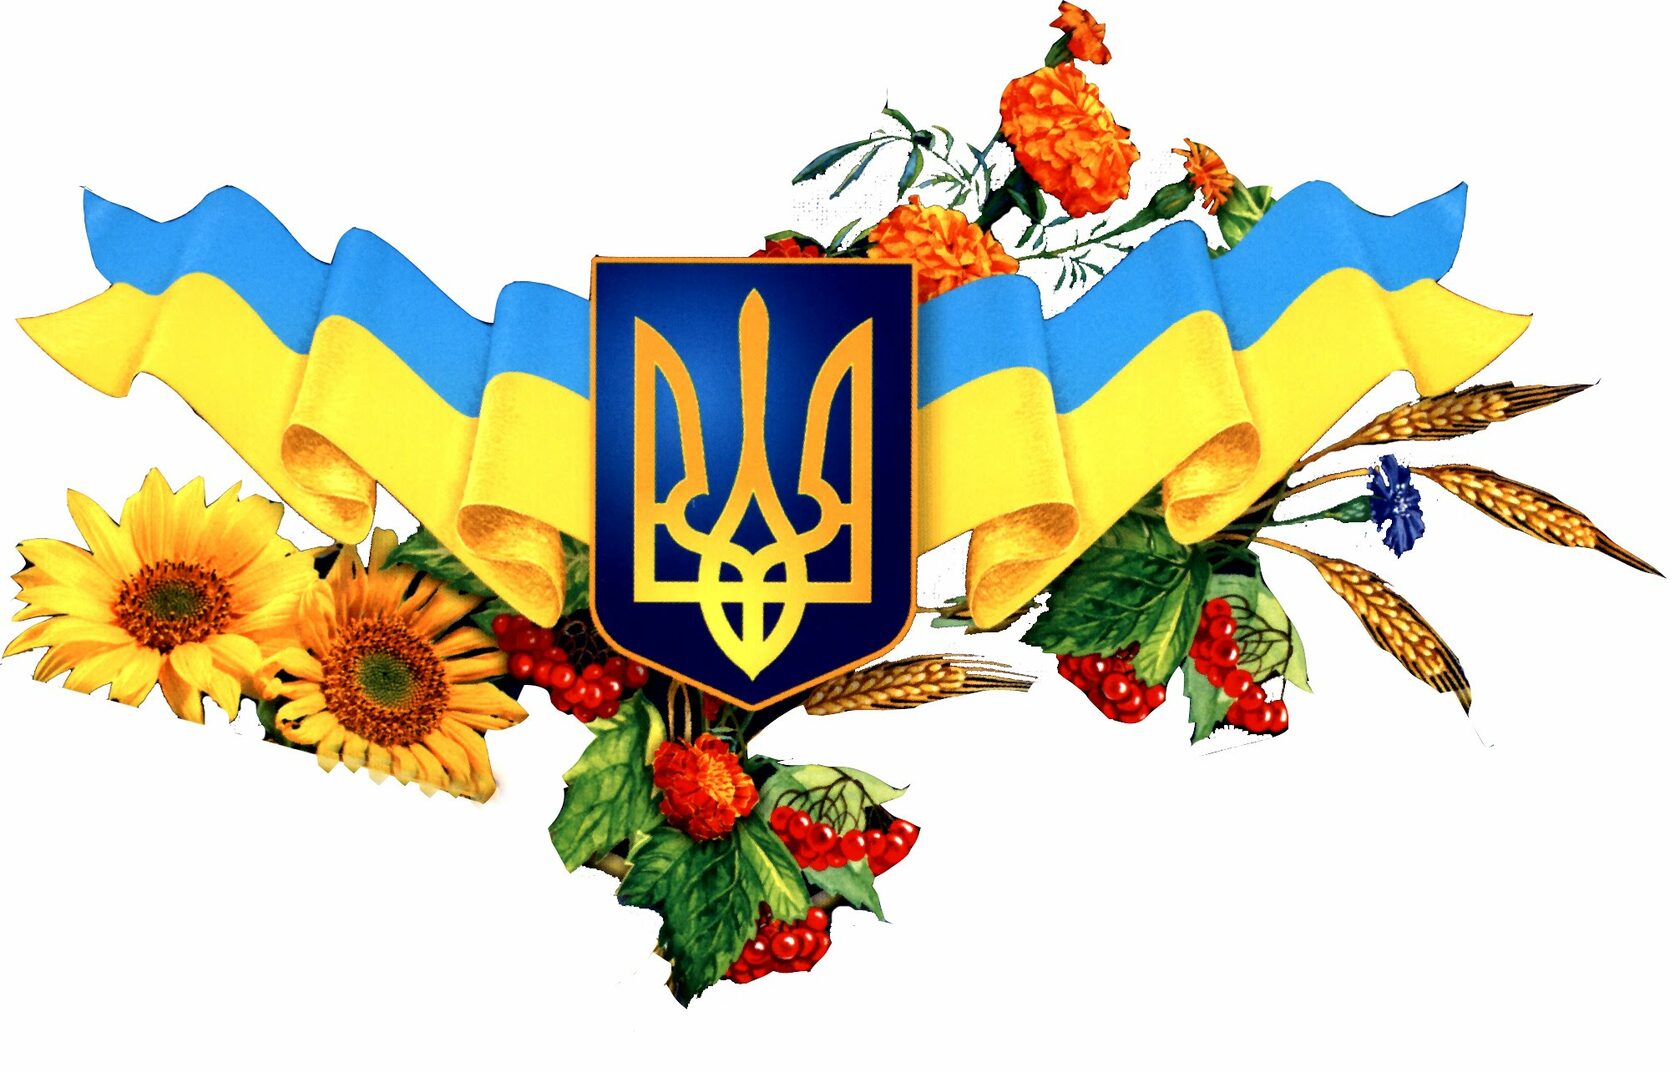 За публичное надругательство над украинским языком хотят ввести уголовную ответственность